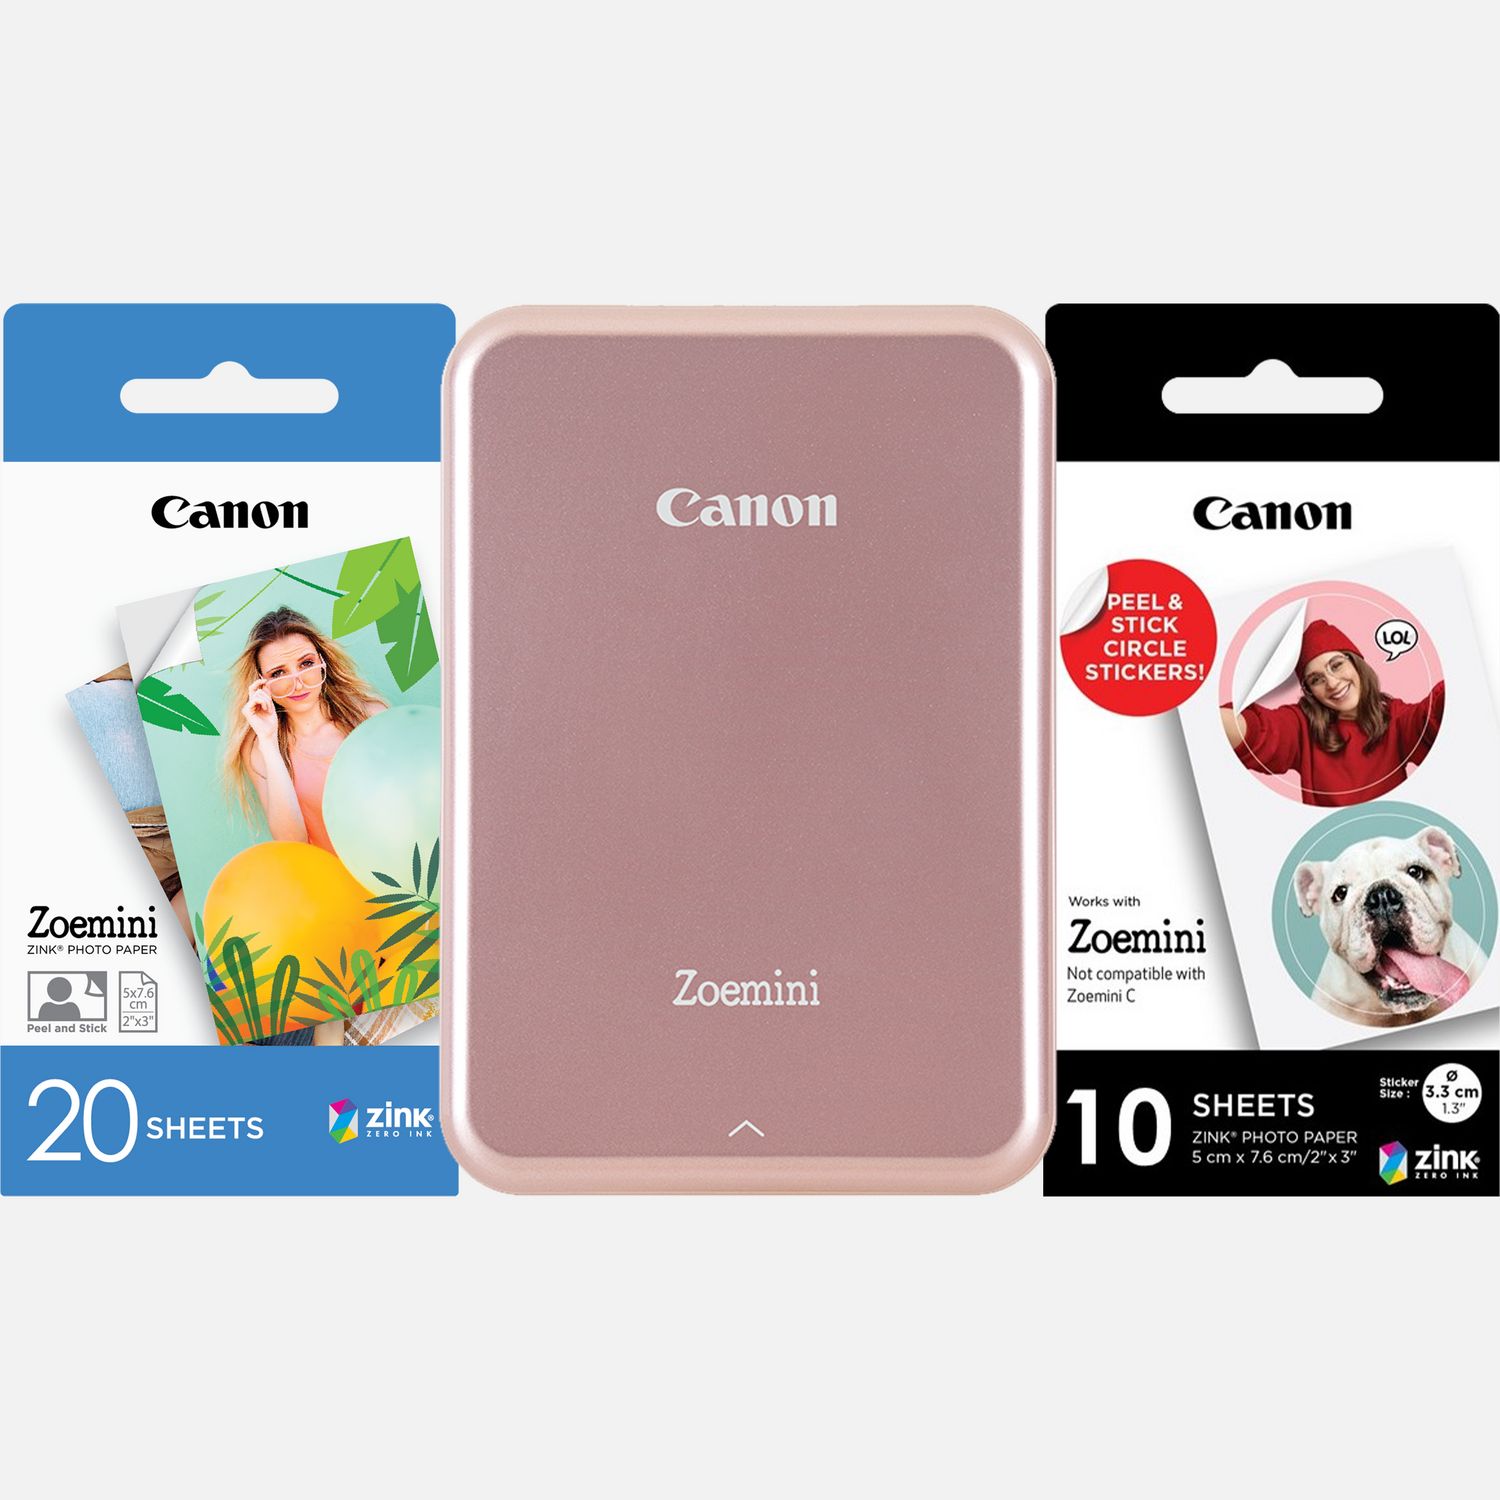 Image of Fotocamera istantanea a colori portatile Canon Zoemini, rosa gold + 20 fogli di carta fotografica 2 x 3" + 10 fogli di carta adesiva a tondini